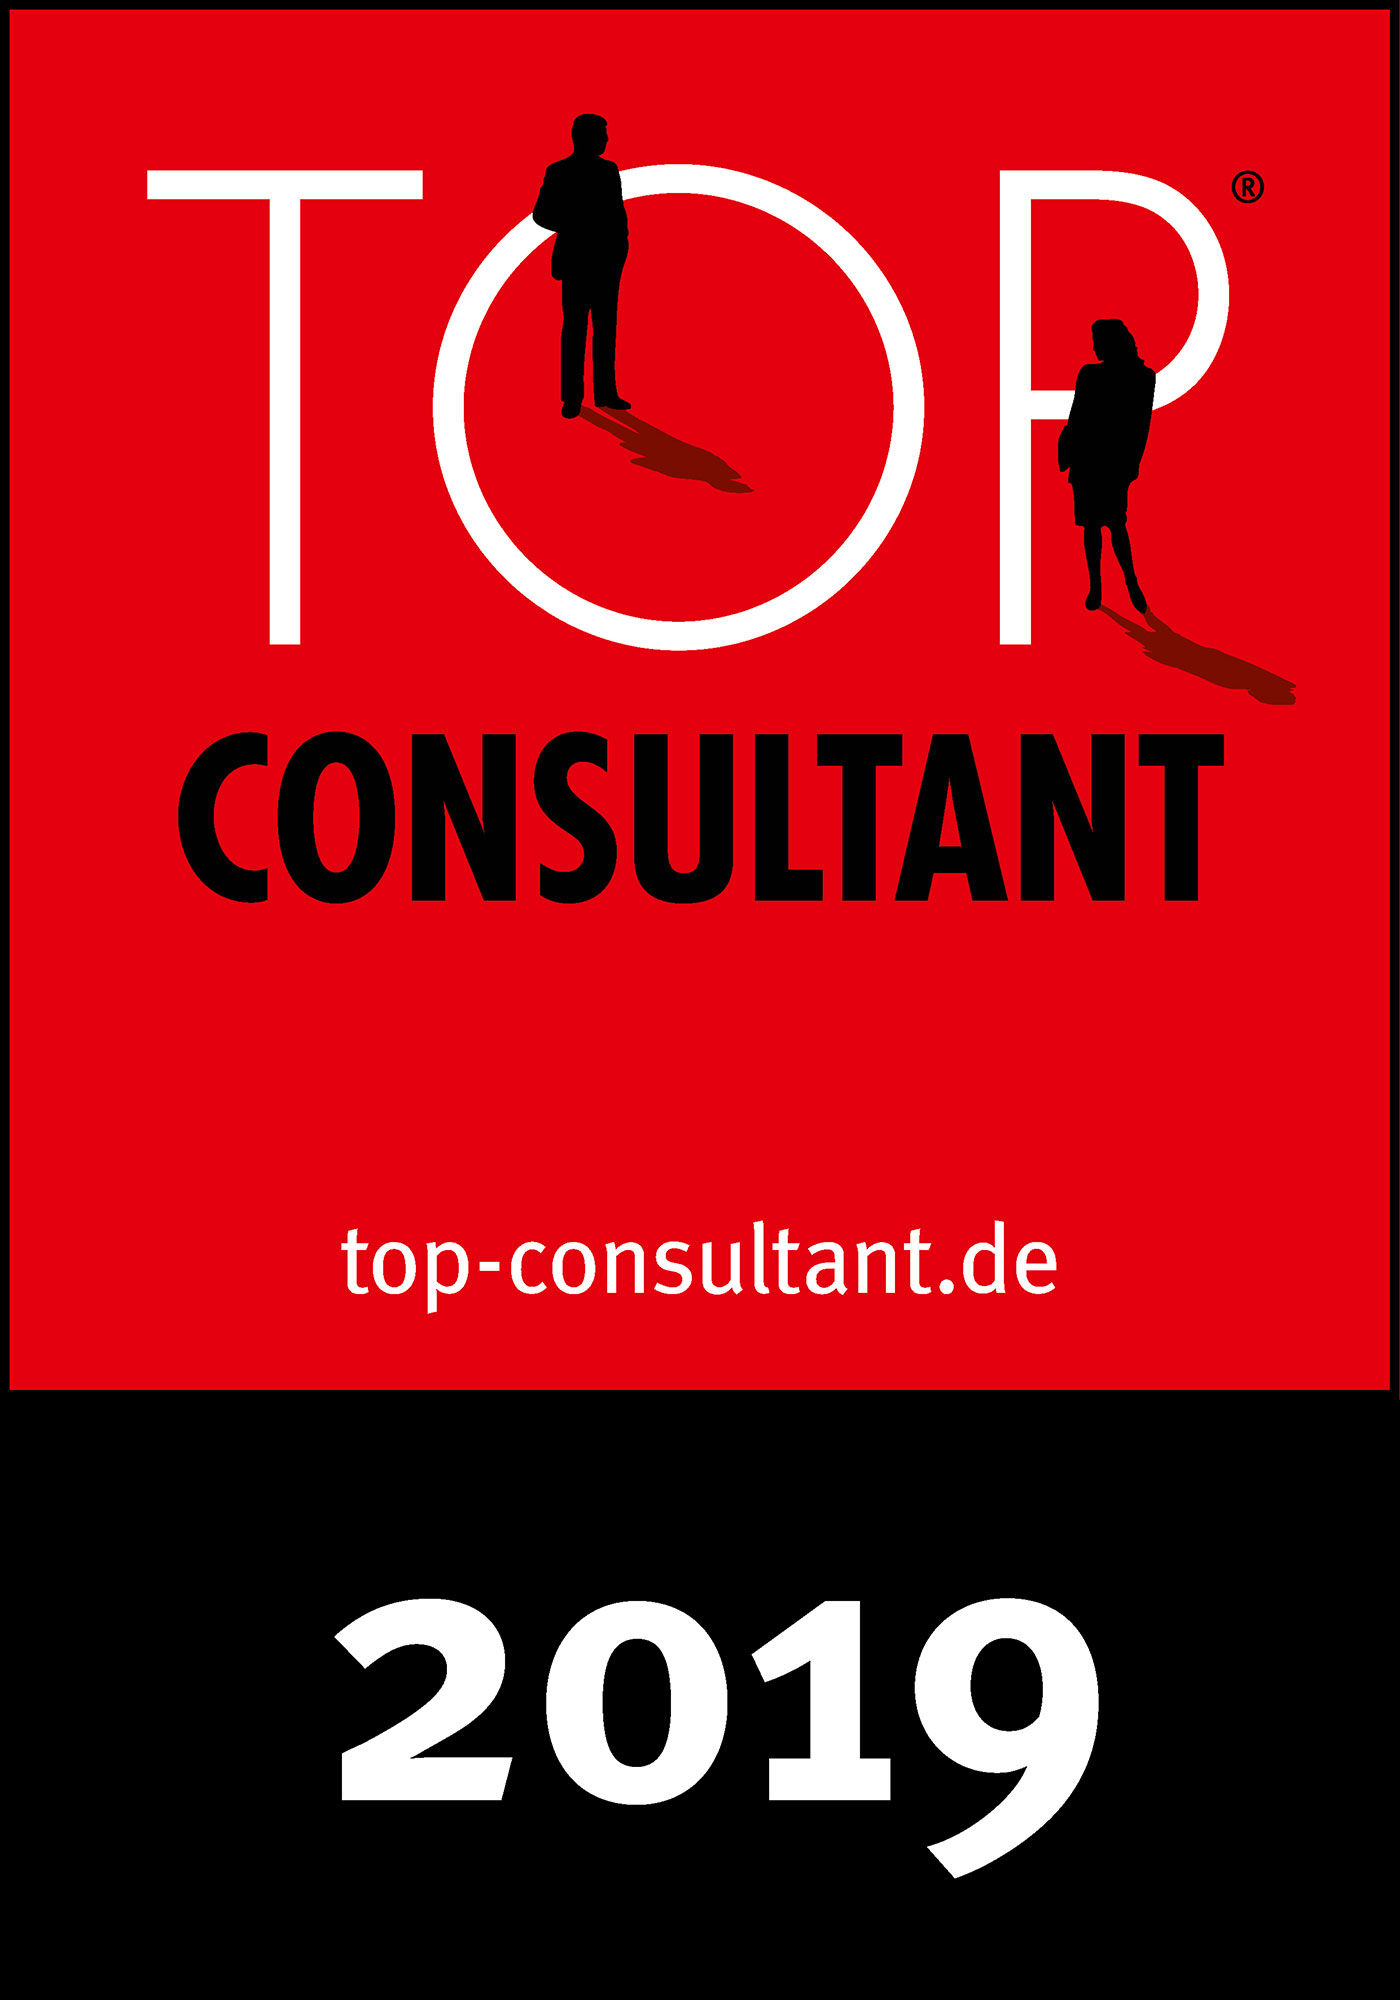 msab GmbH erneut als Top-Consultant ausgezeichnet